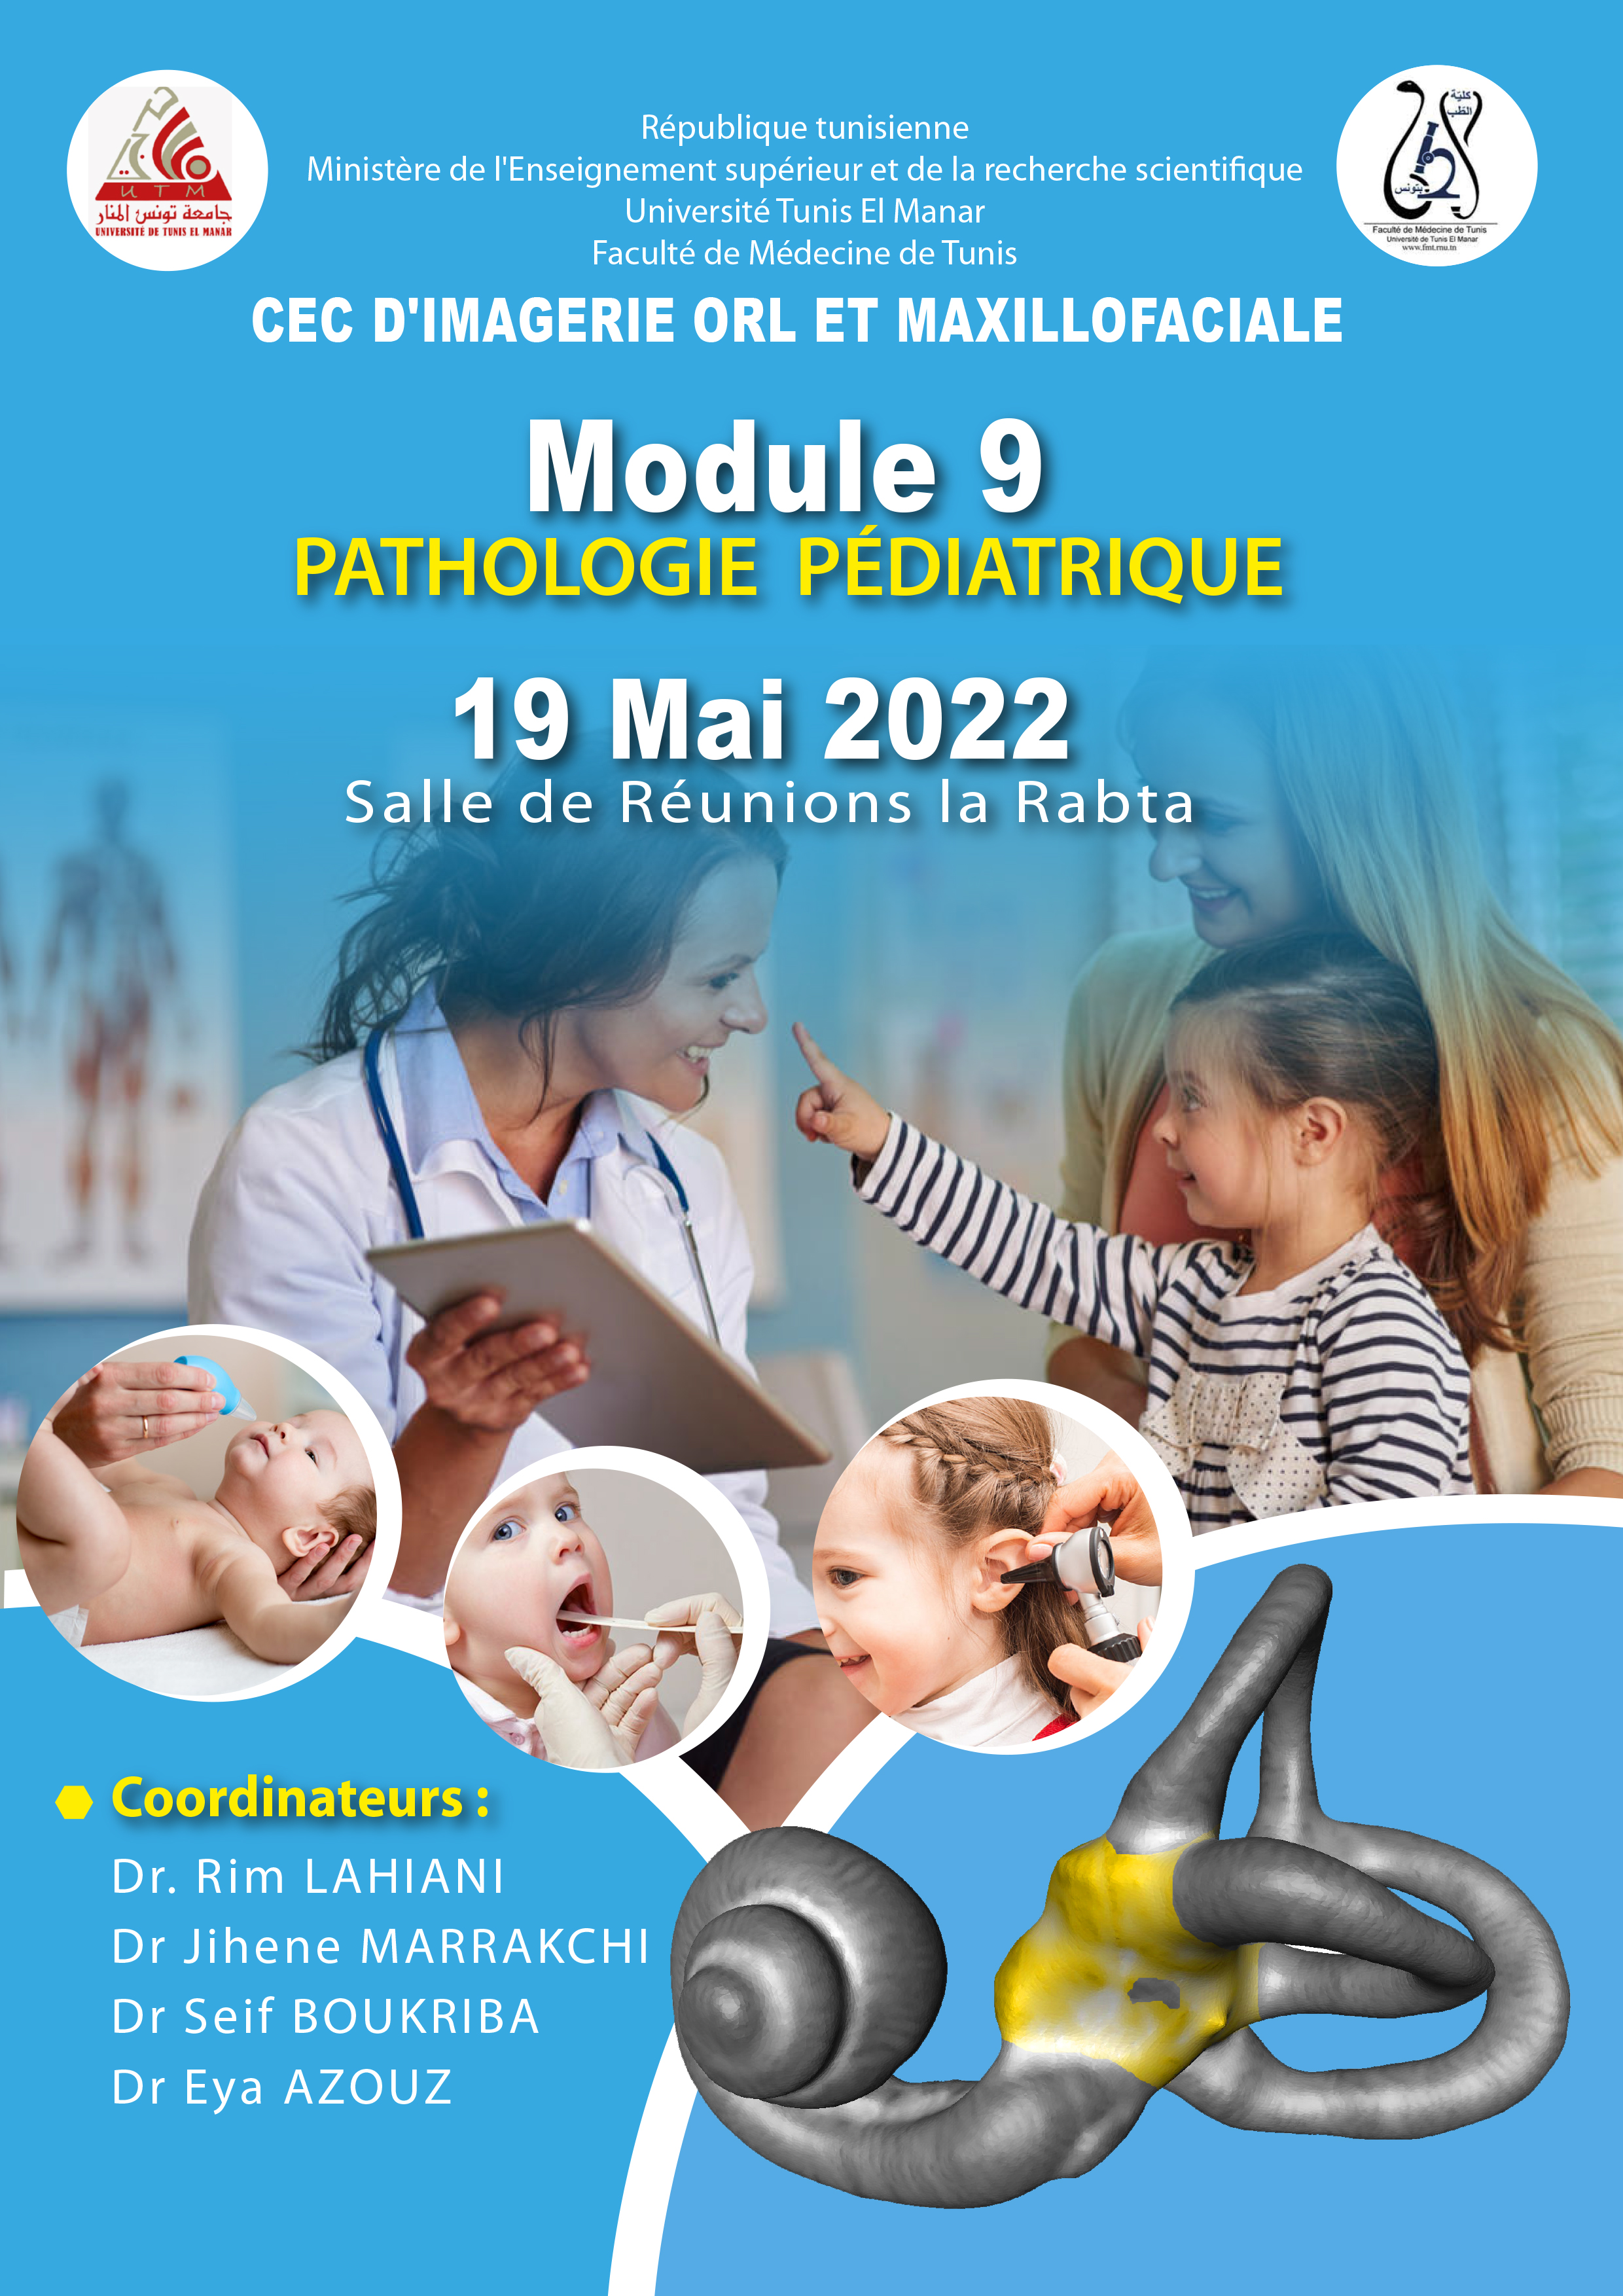 Module 9: Pathologie pédiatrique